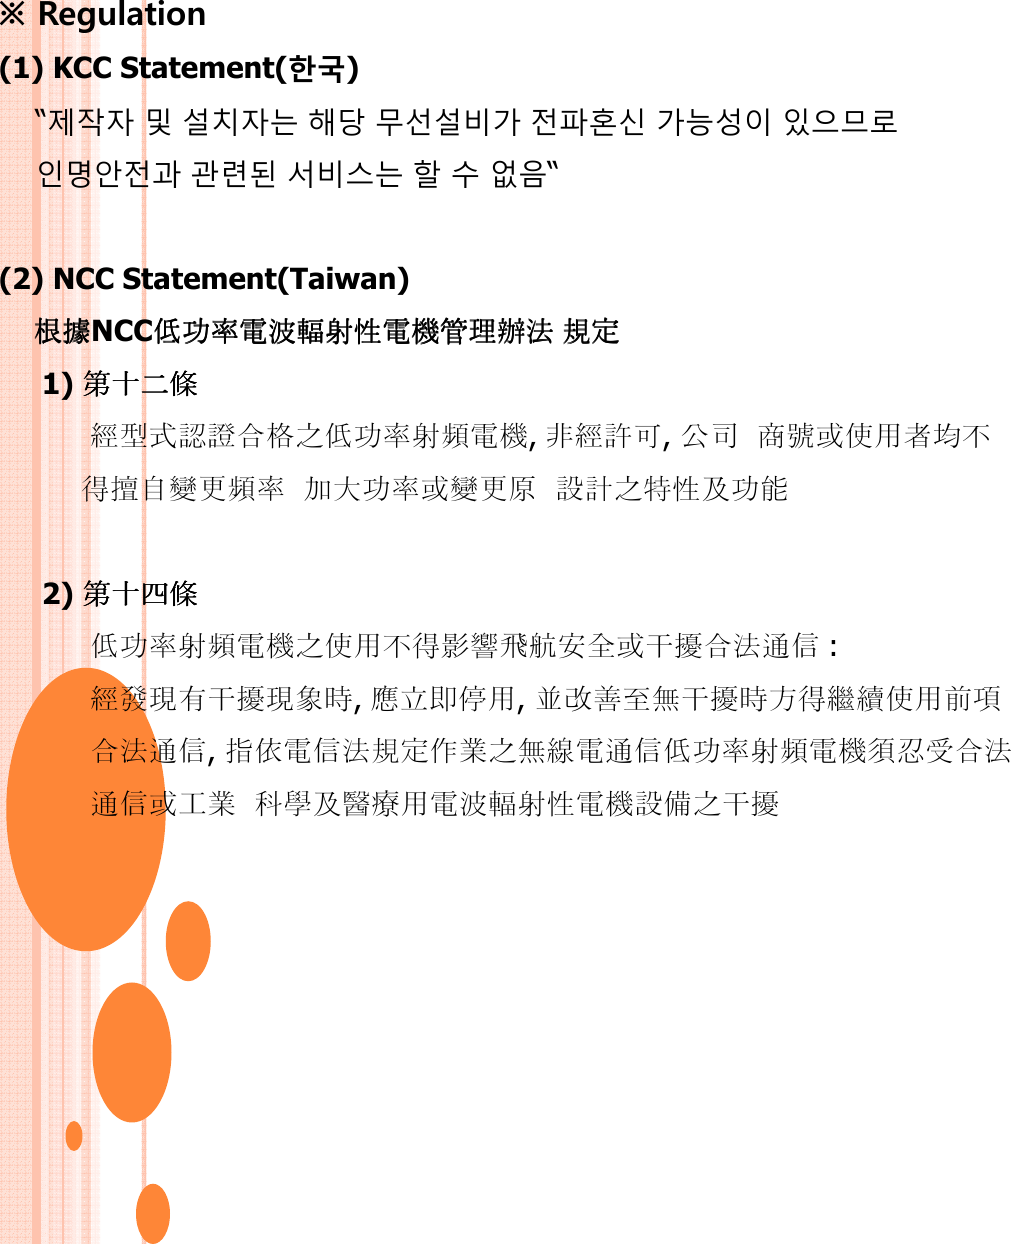 ※ Regulation (1) KCC Statement(한국)“제작자 및 설치자는 해당 무선설비가 전파혼신 가능성이 있으므로인명안전과 관련된 서비스는 할 수 없음“(2) NCC Statement(Taiwan)根據根據根據根據NCC功機管功機管功機管功機管 規規規規1) 經格功機, 經可, 公 均得更 加大功更 計及功能2) 功機得干 : 經干, 󰀽, 改干得繼, 規功機工科及機干